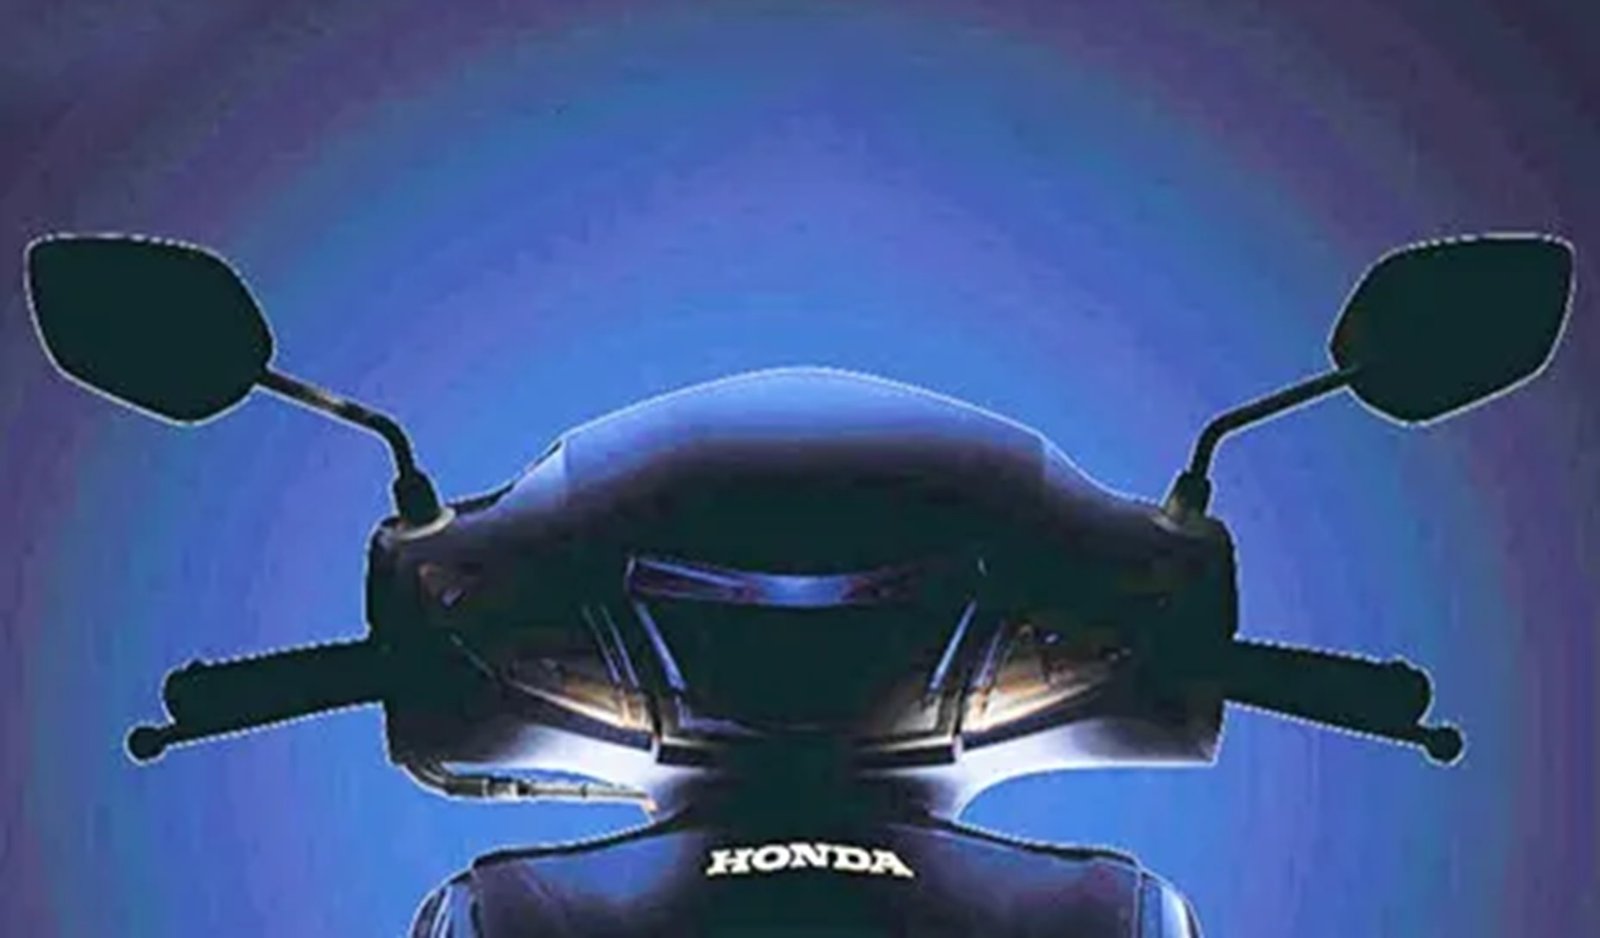 Honda Activa 7G Launch - 6g के बाद जल्द धूम मचाने आएगी न्यू Activa 7G, देखे कब होंगी लांच,